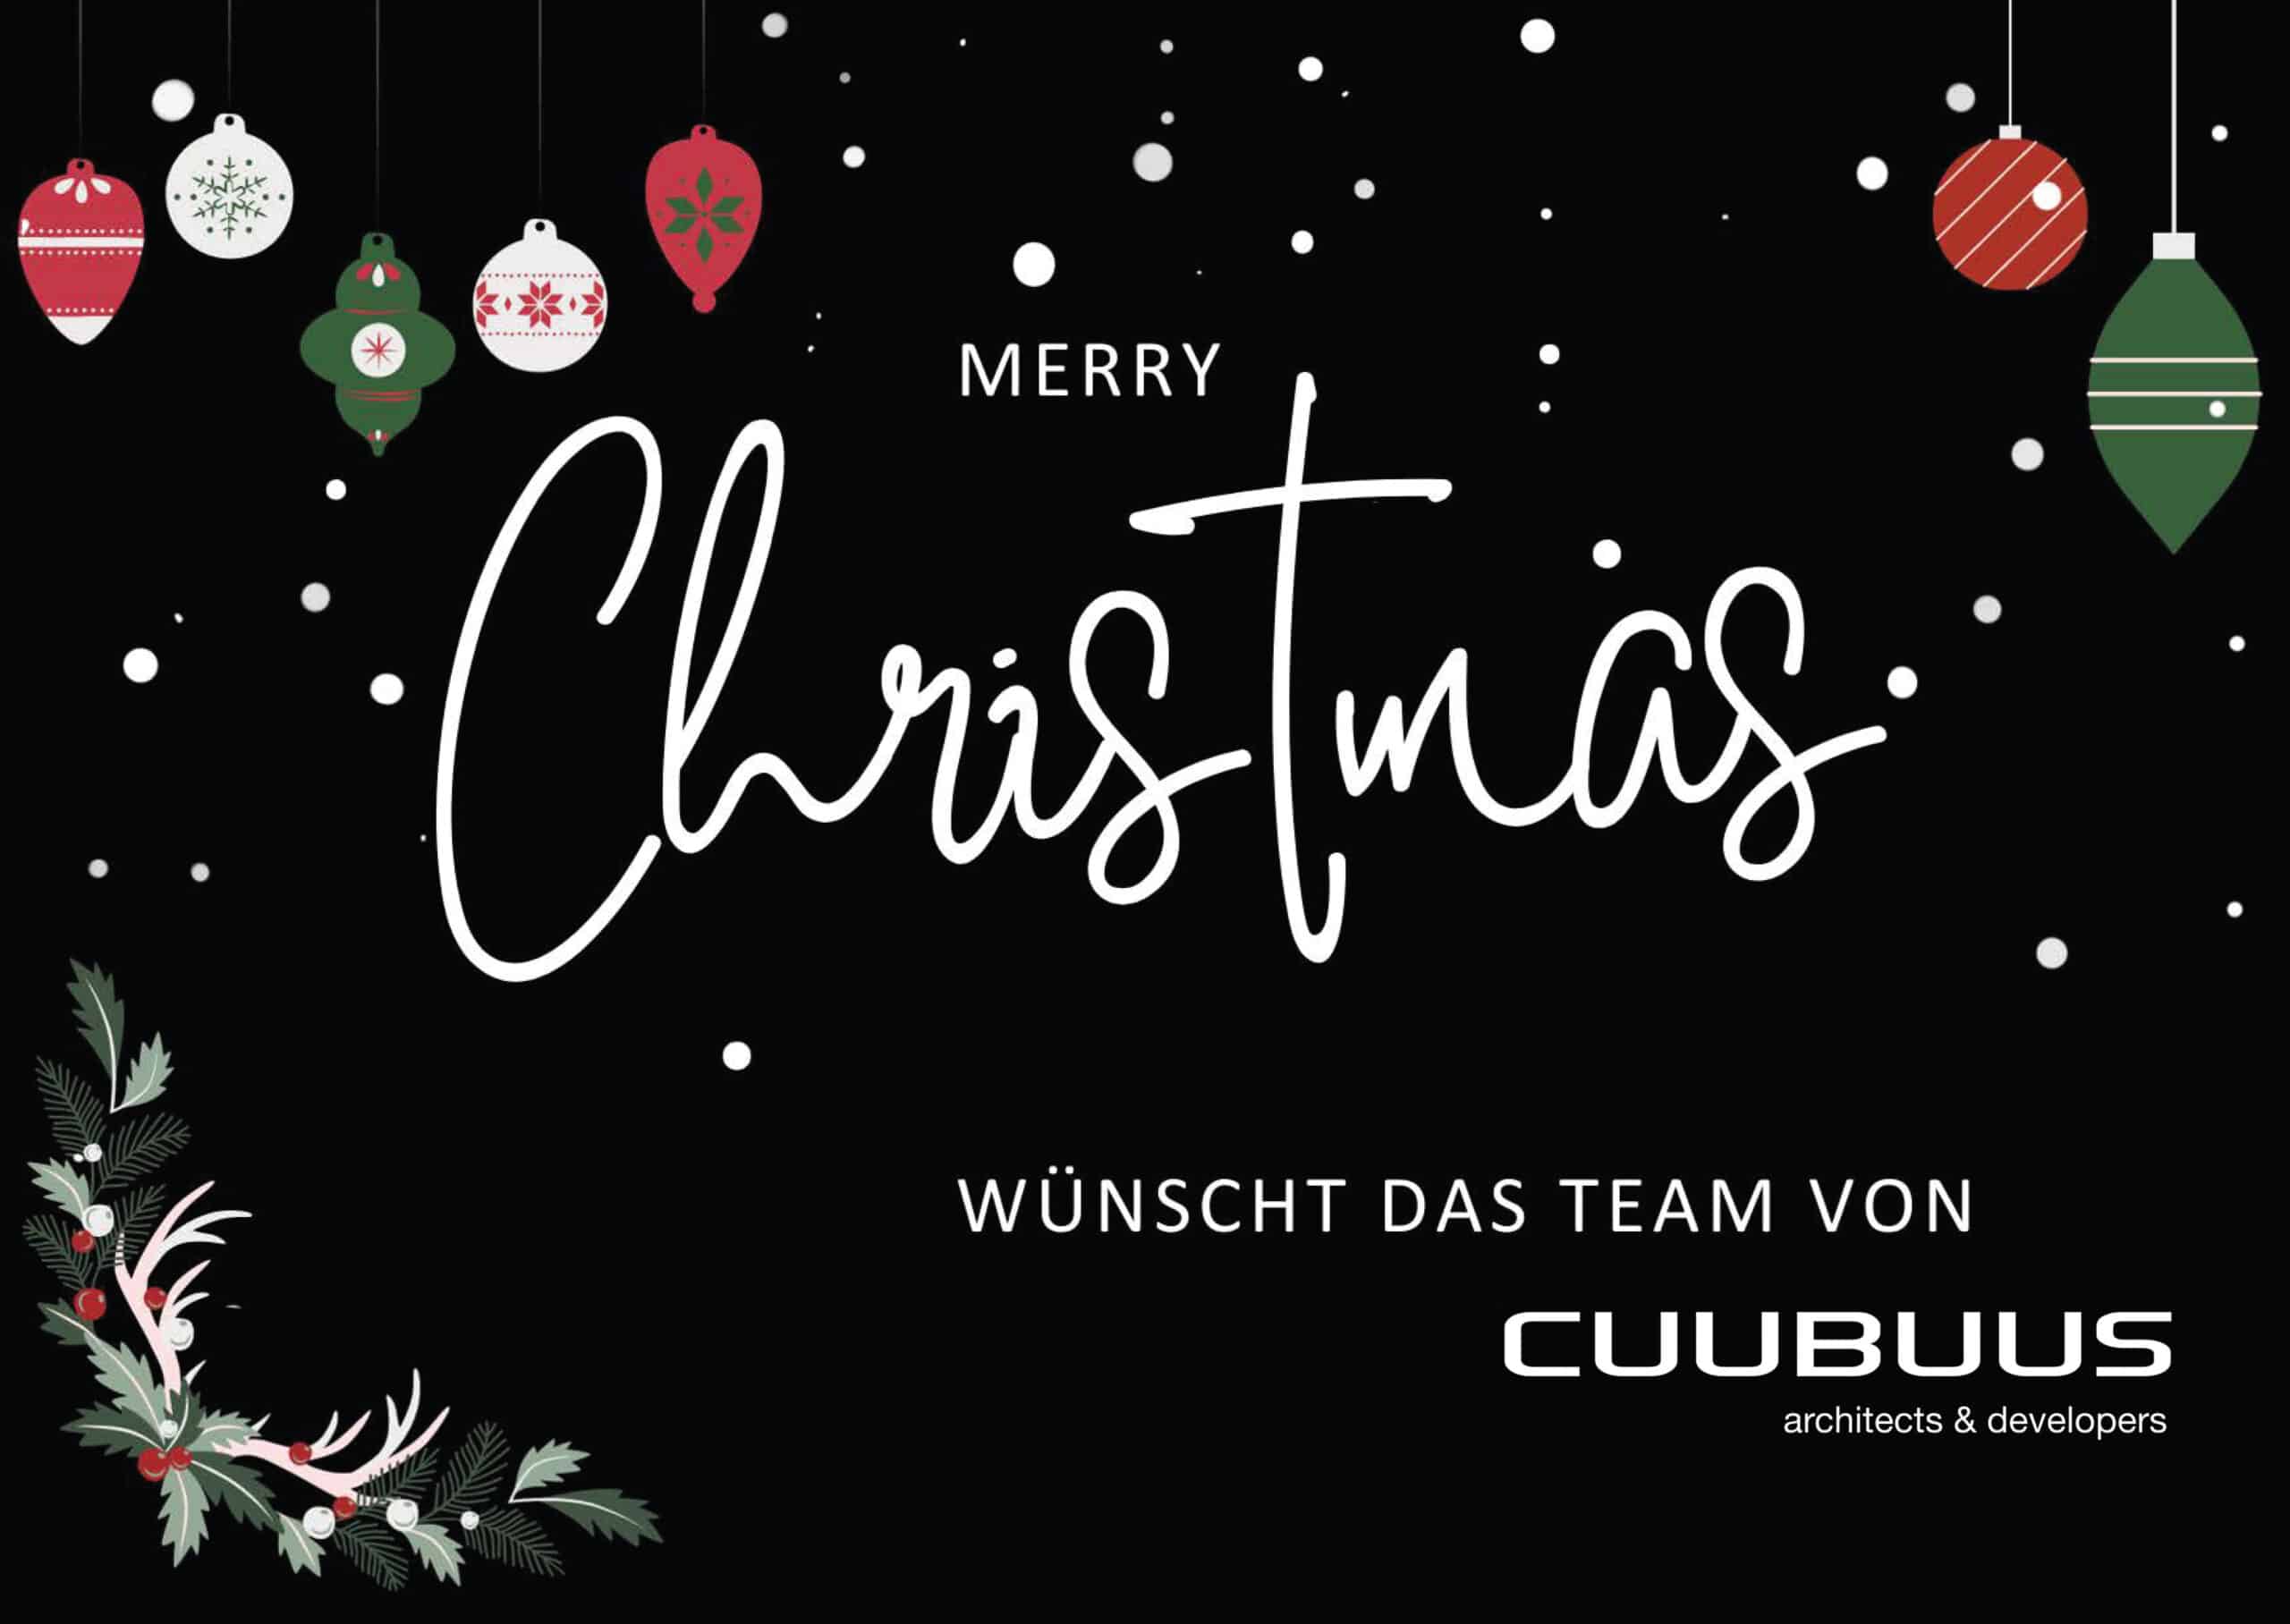 Cuubuus - Oh du Fröhliche… Wir wünschen besinnliche Feiertage!